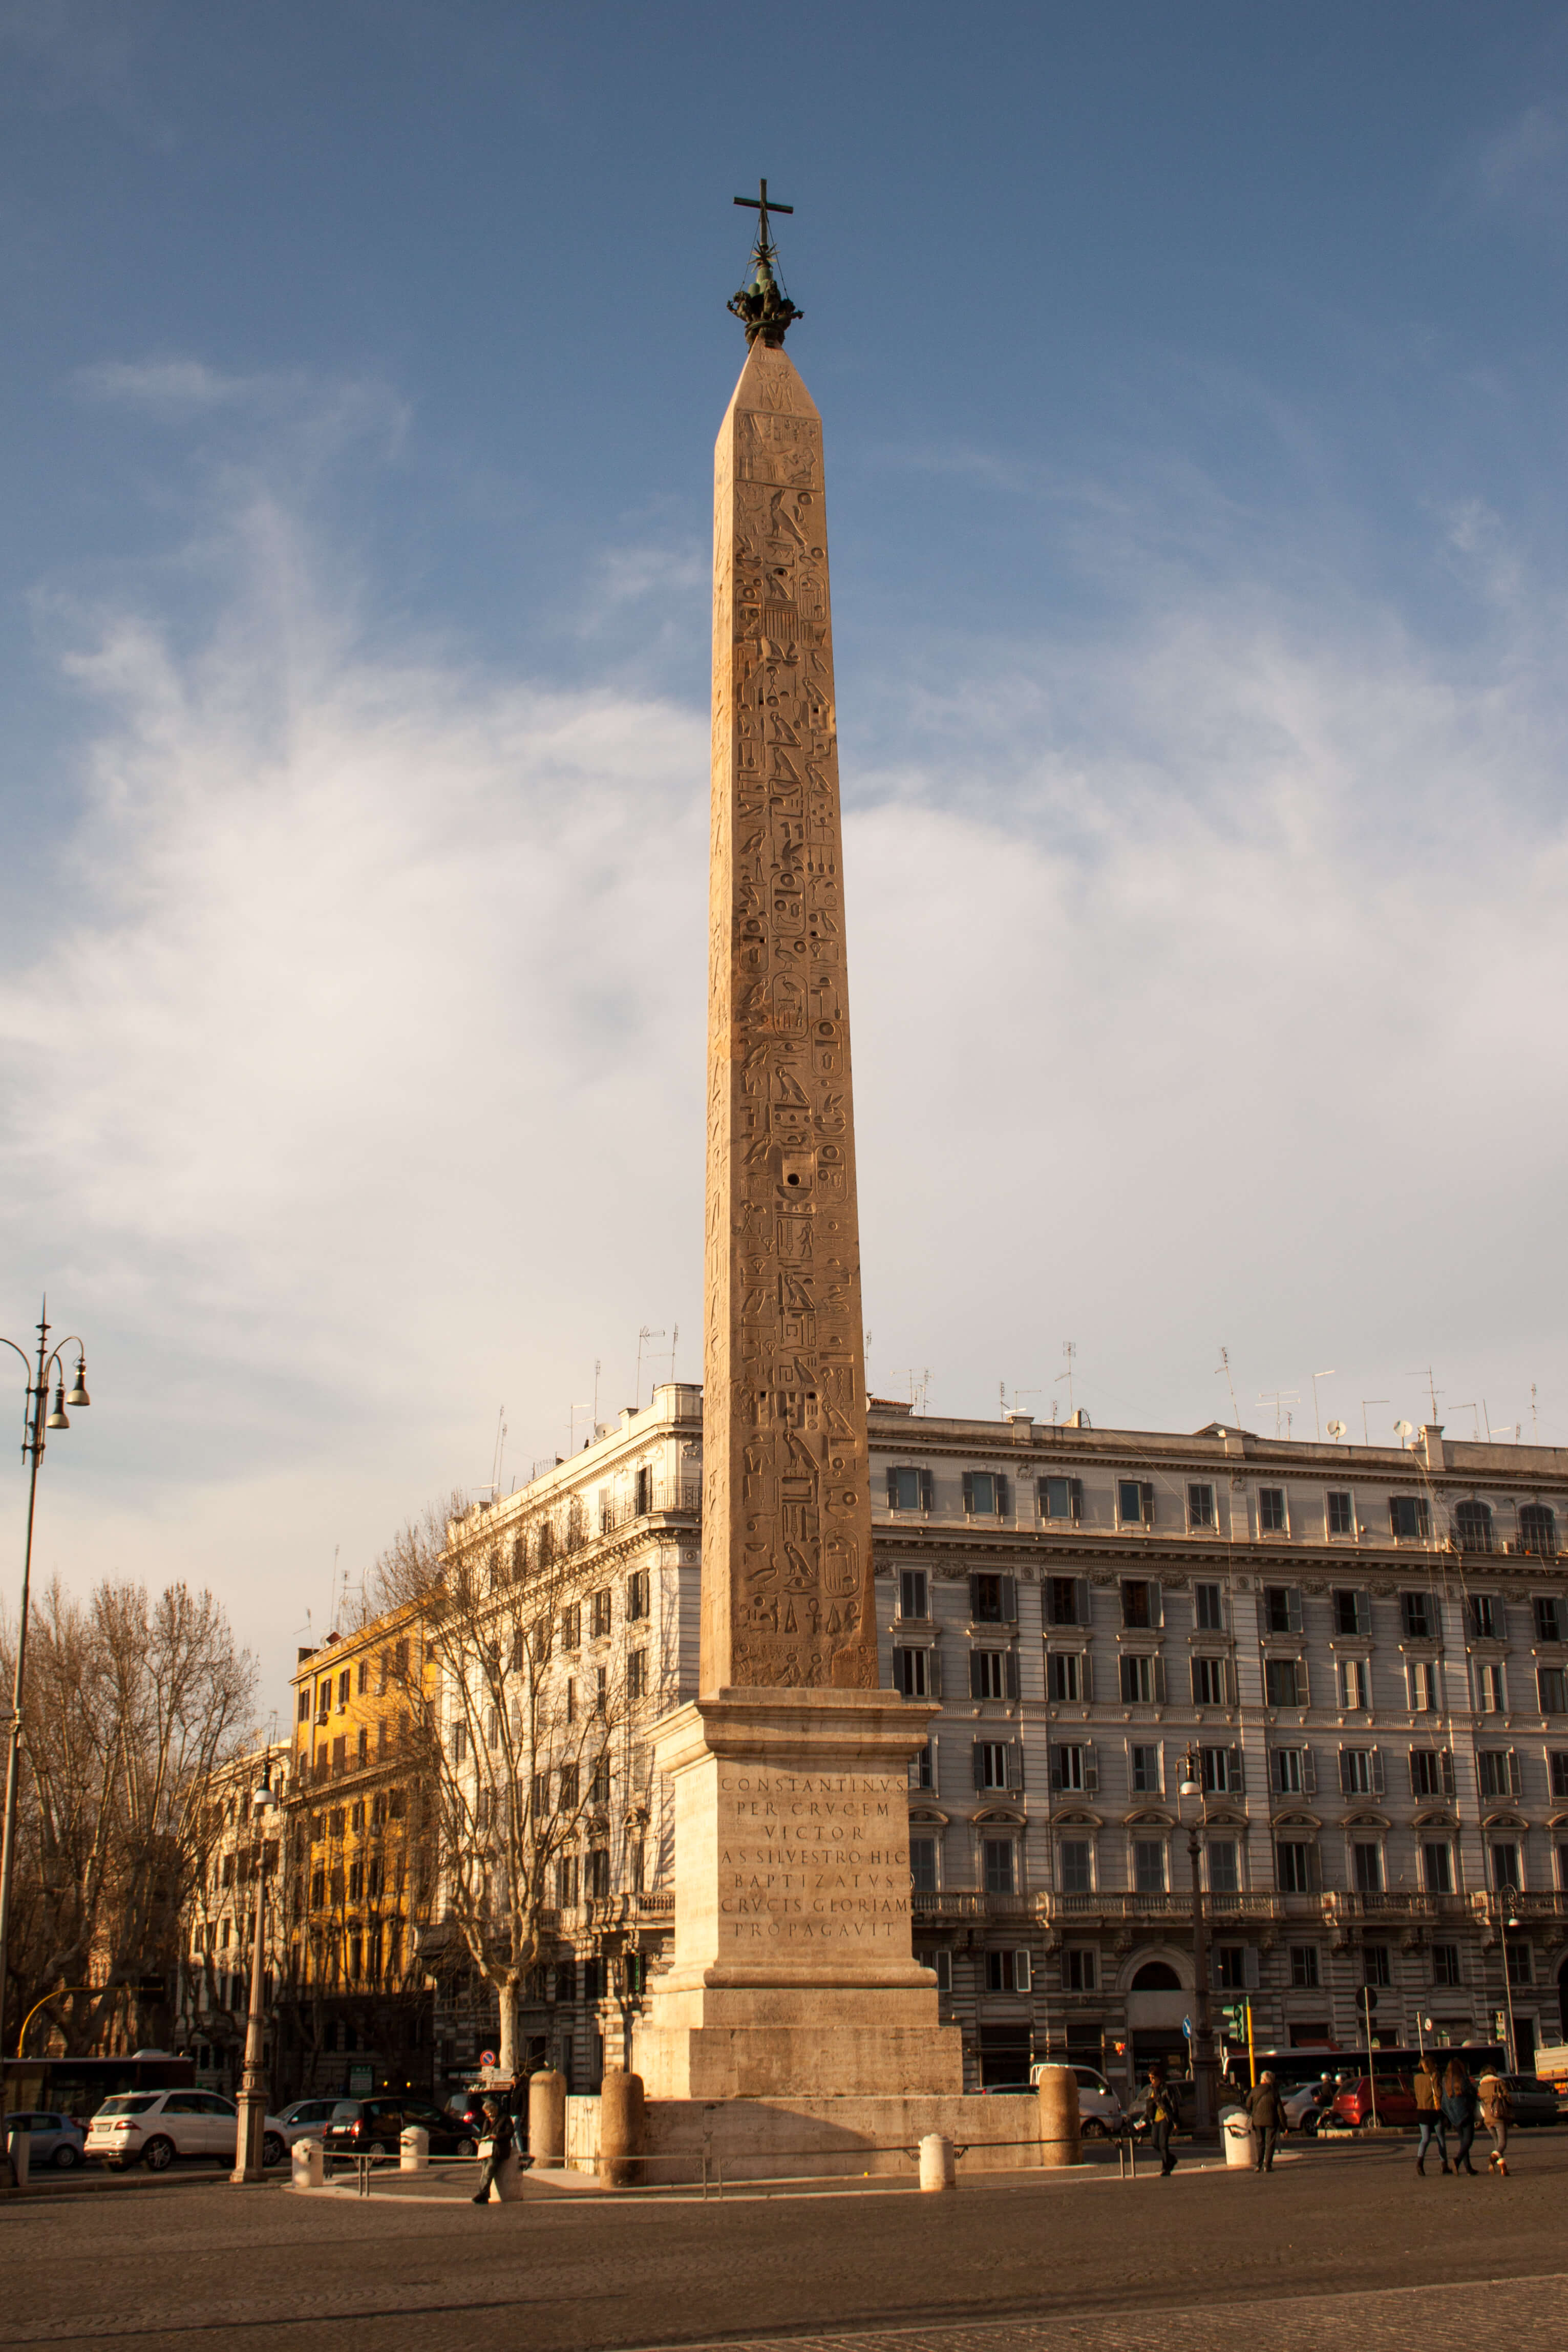 Lateran obelisk